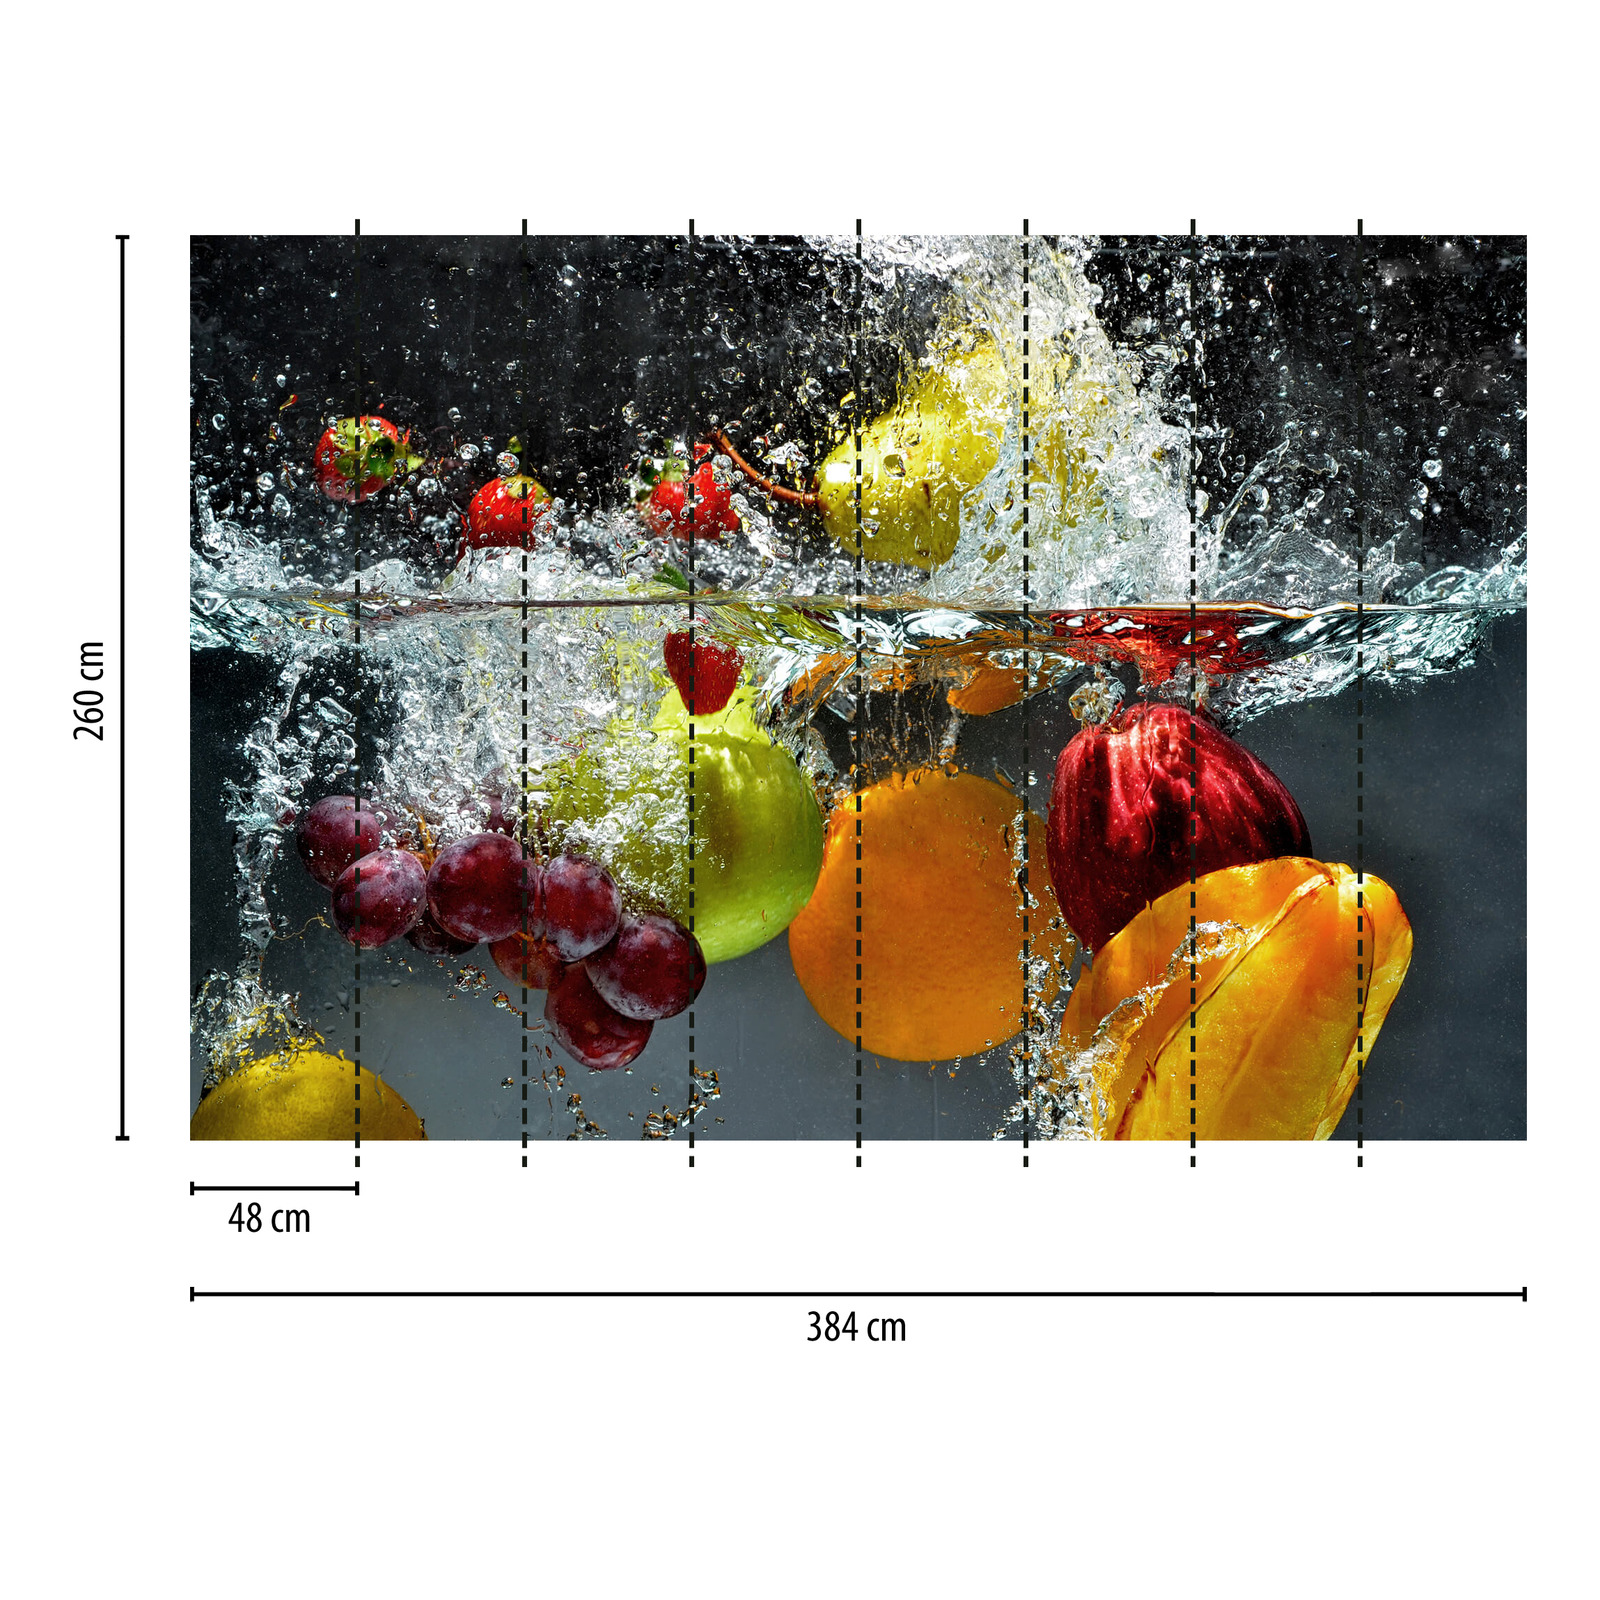             Fototapete frisches Obst und Wasser – Bunt, Gelb, Rot
        